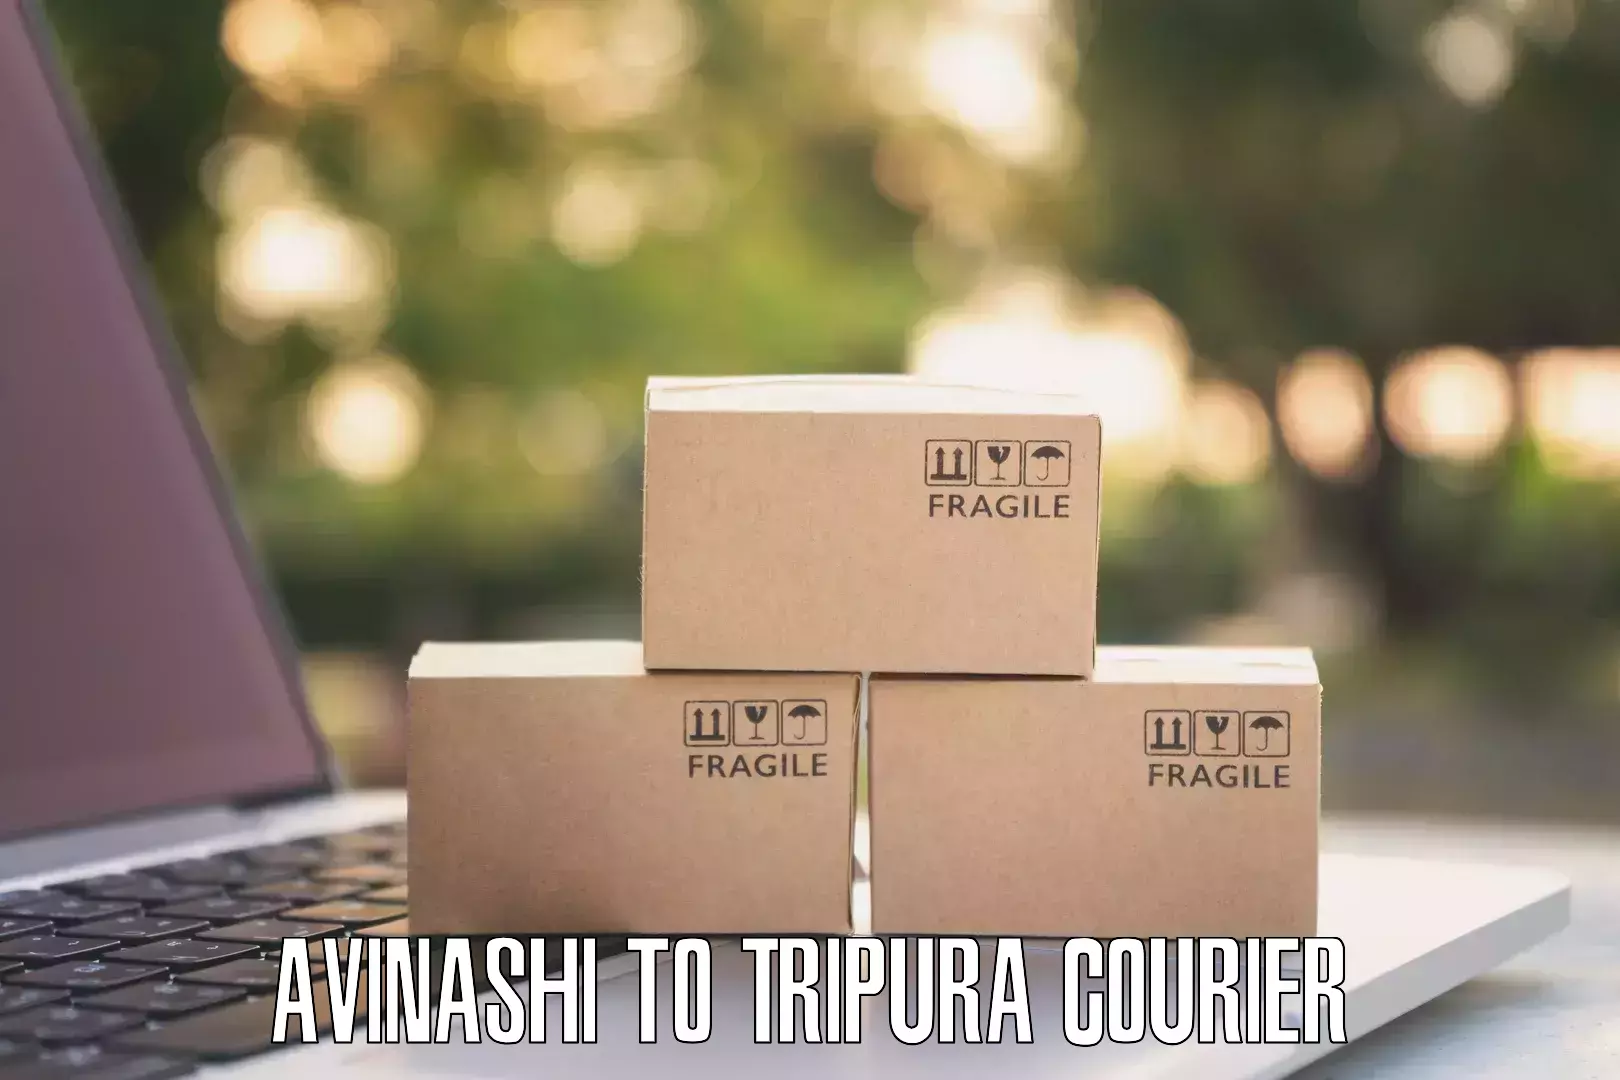 Express package handling Avinashi to Tripura